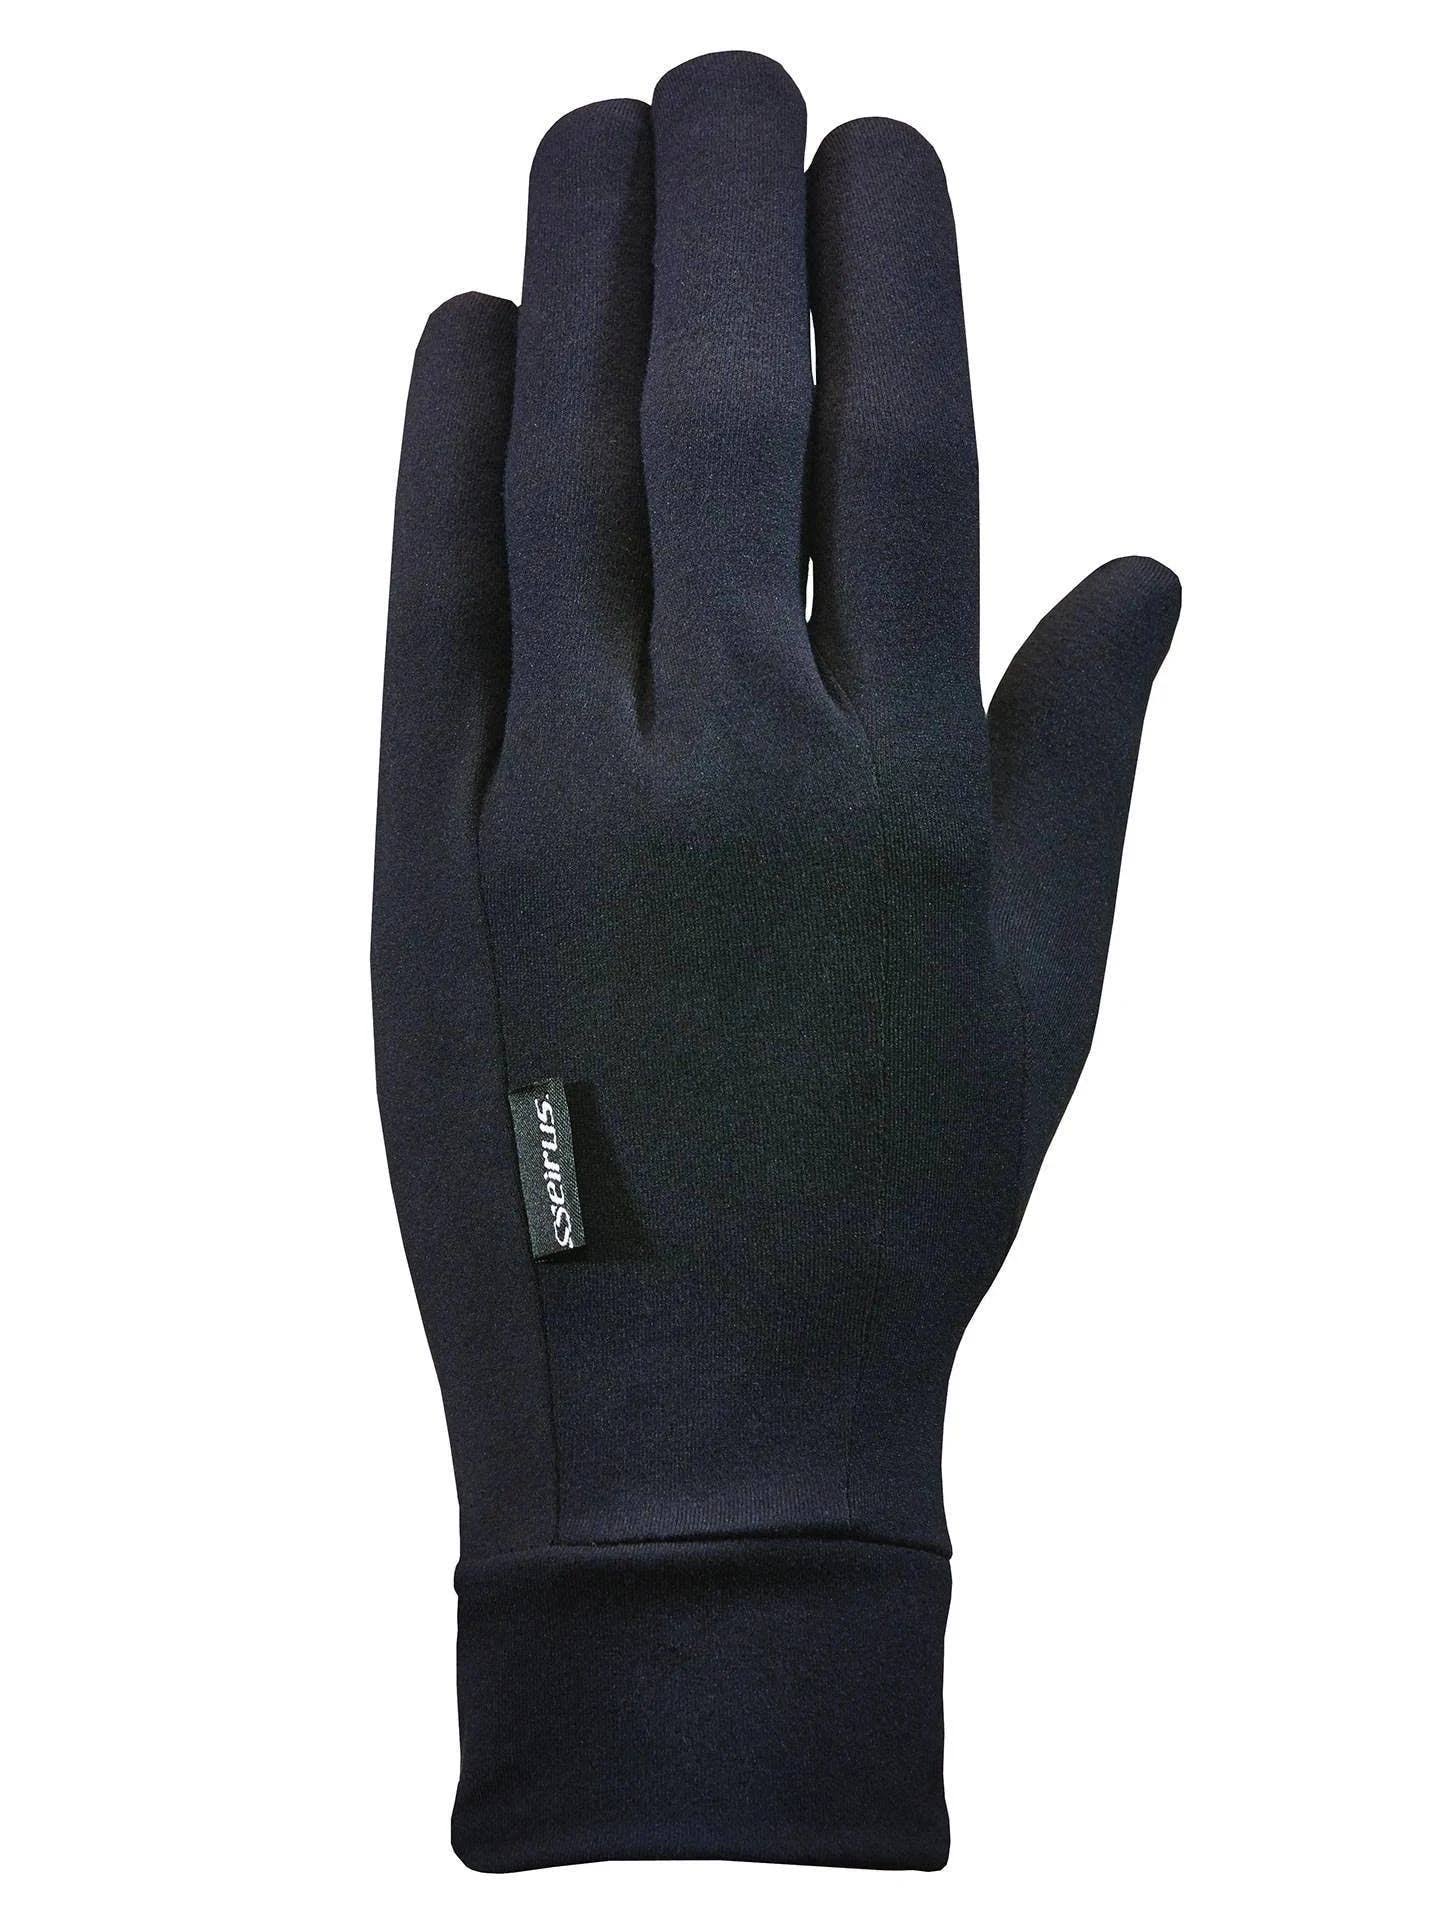 Seirus Heatwave Glove Liner - Black, X-Large